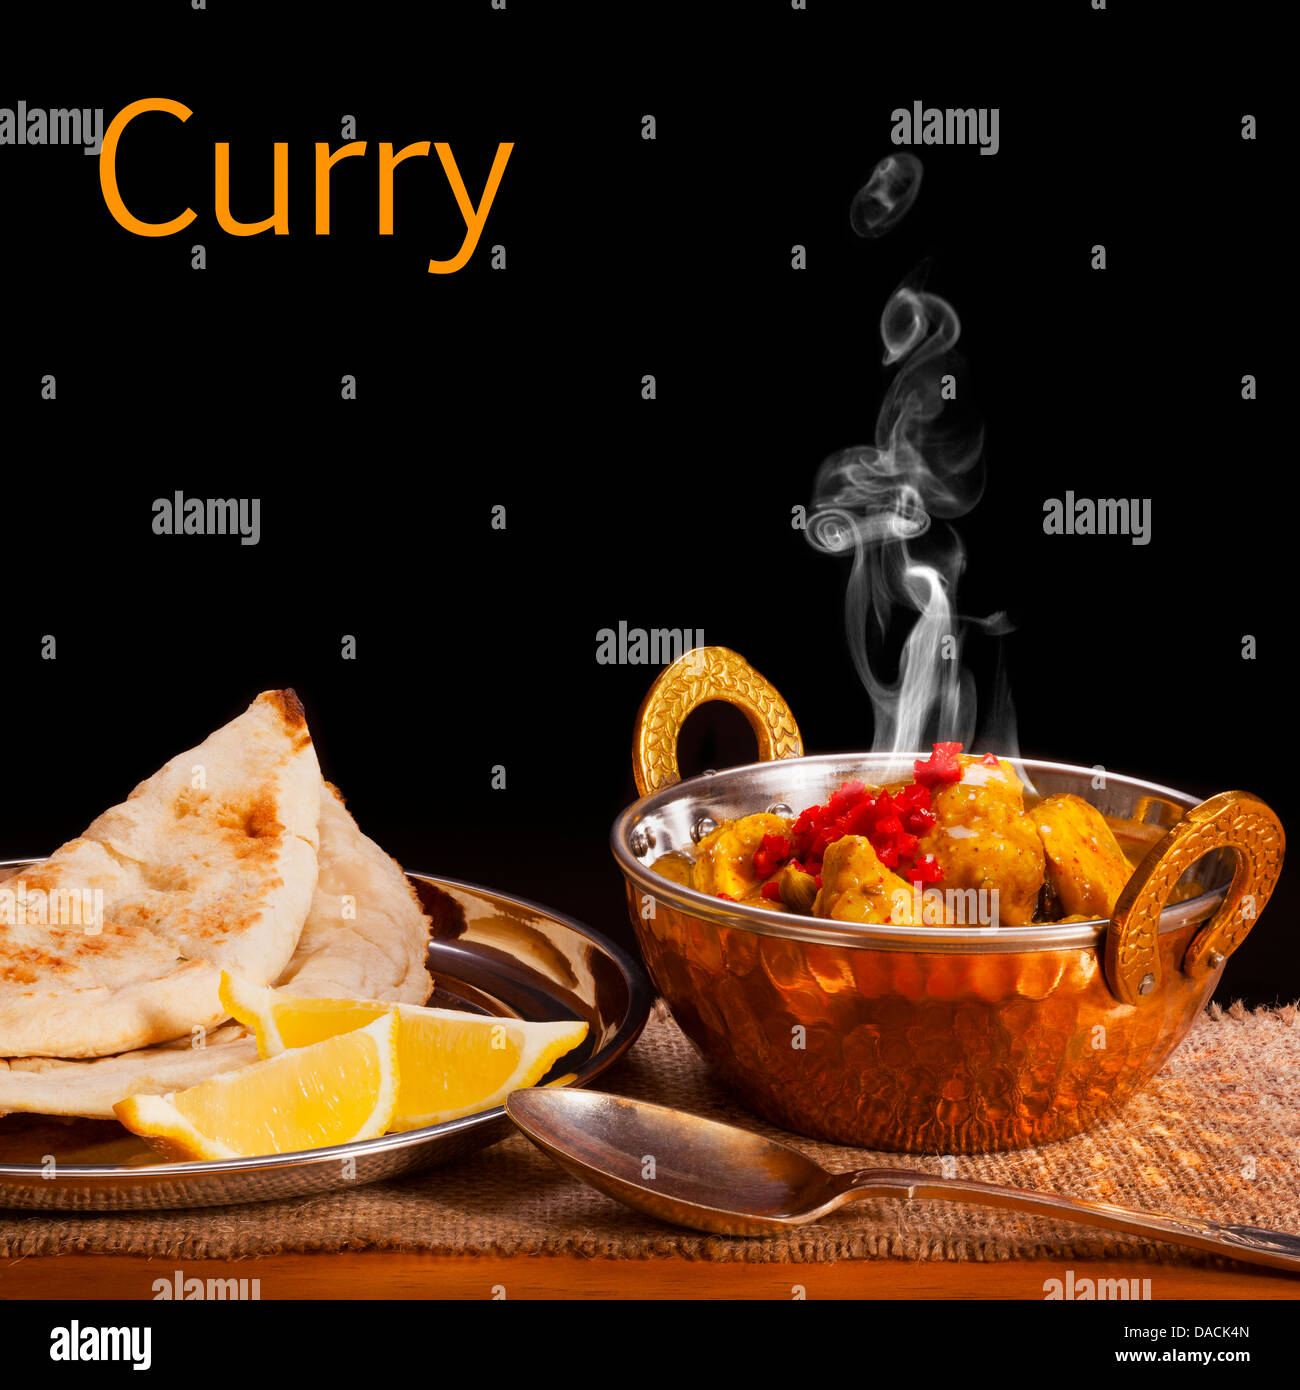 Curry-Konzept - ein Balti Gericht mit Hühnchen-Curry mit sichtbaren Dampf steigt, serviert mit Naan Brot und Zitrone, von vorne nach hinten Fokus Stockfoto